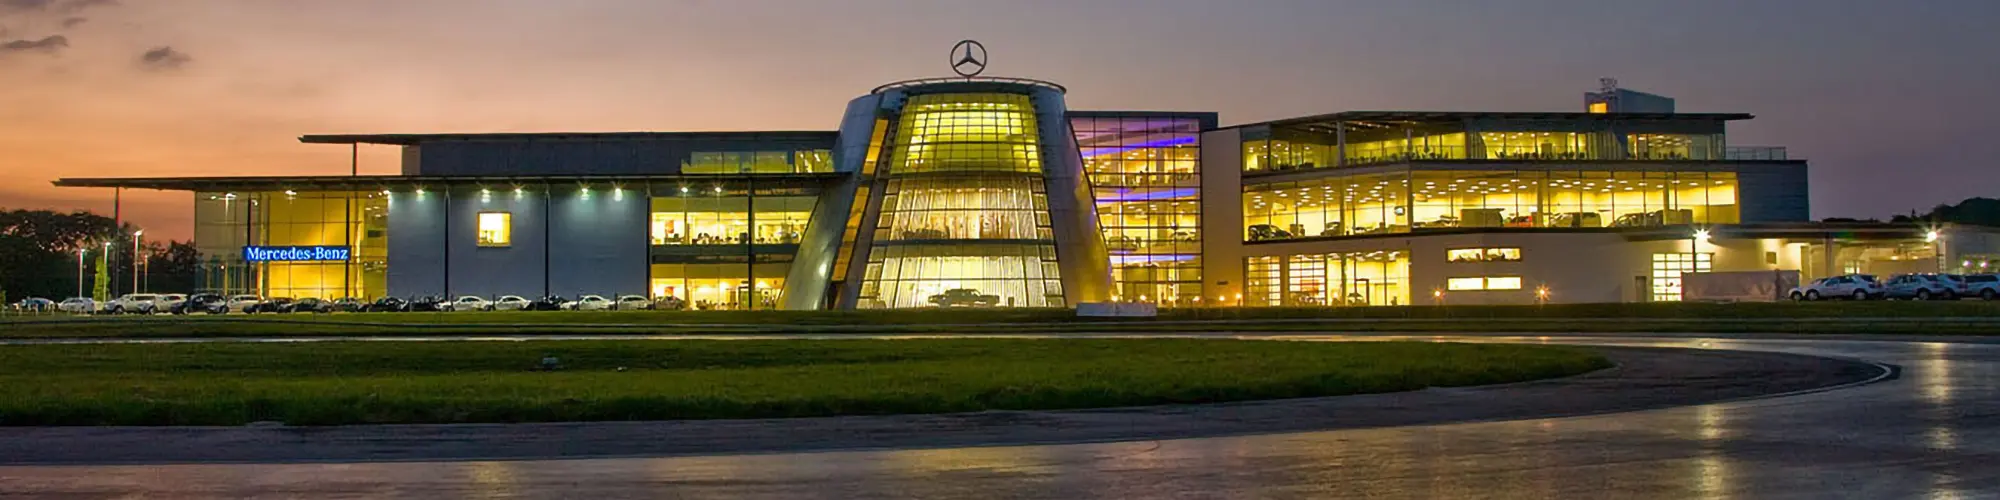 Mercedes-Benz World Spring Wedding Show